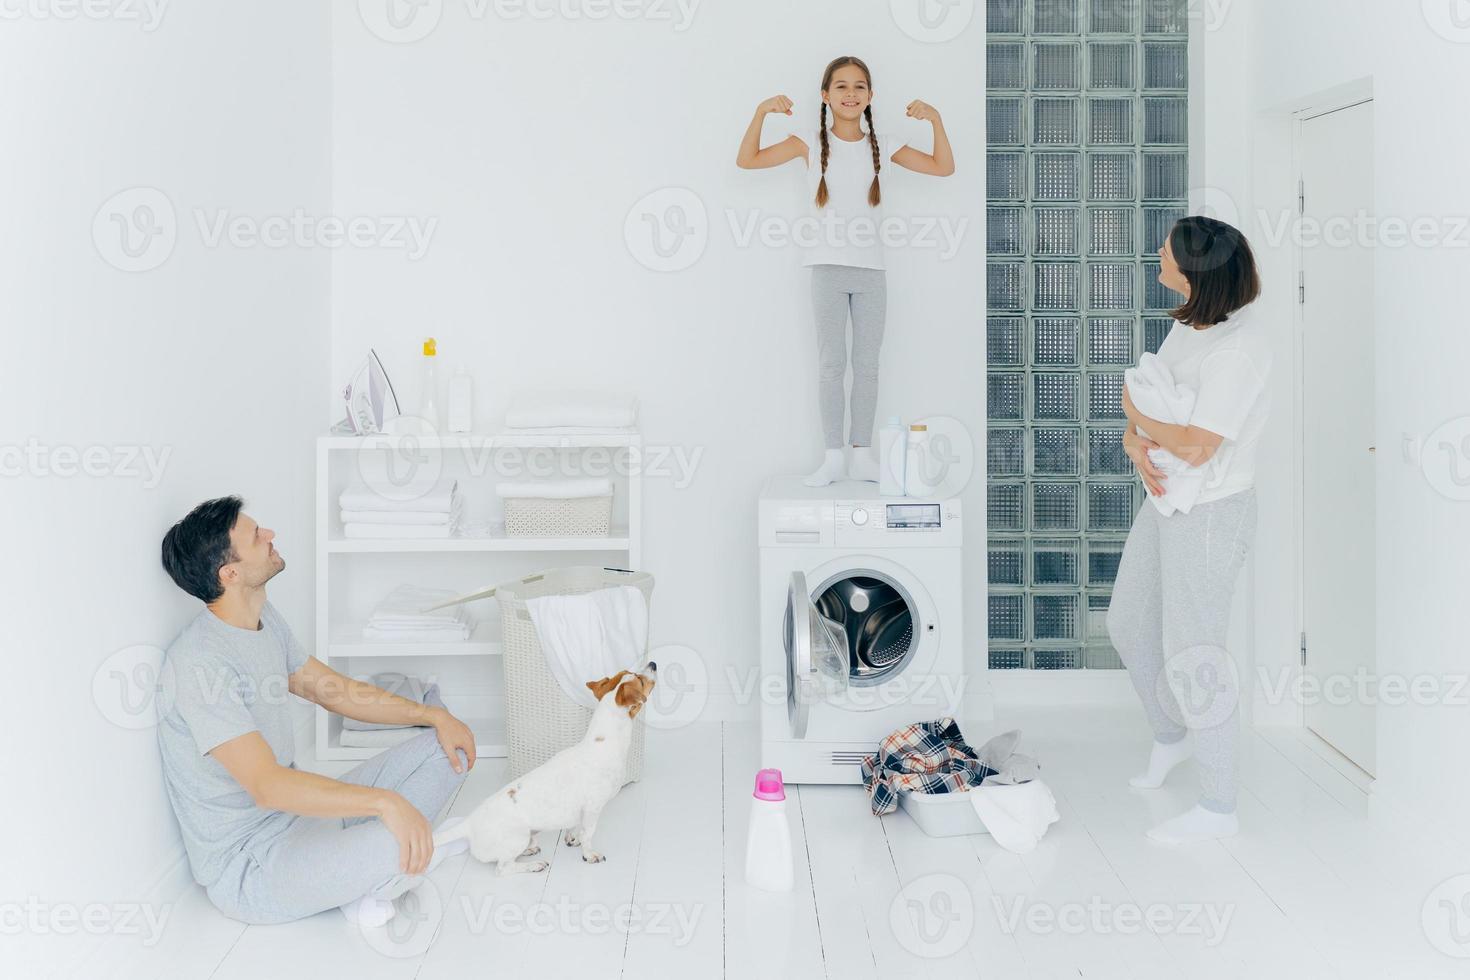 foto van gelukkig schoolmeisje poseert bovenop de wasmachine, toont spieren, heft armen op, klaar om ouders te helpen met wassen of wassen. vrouw en man poseren in wasruimte met hond en klein kind